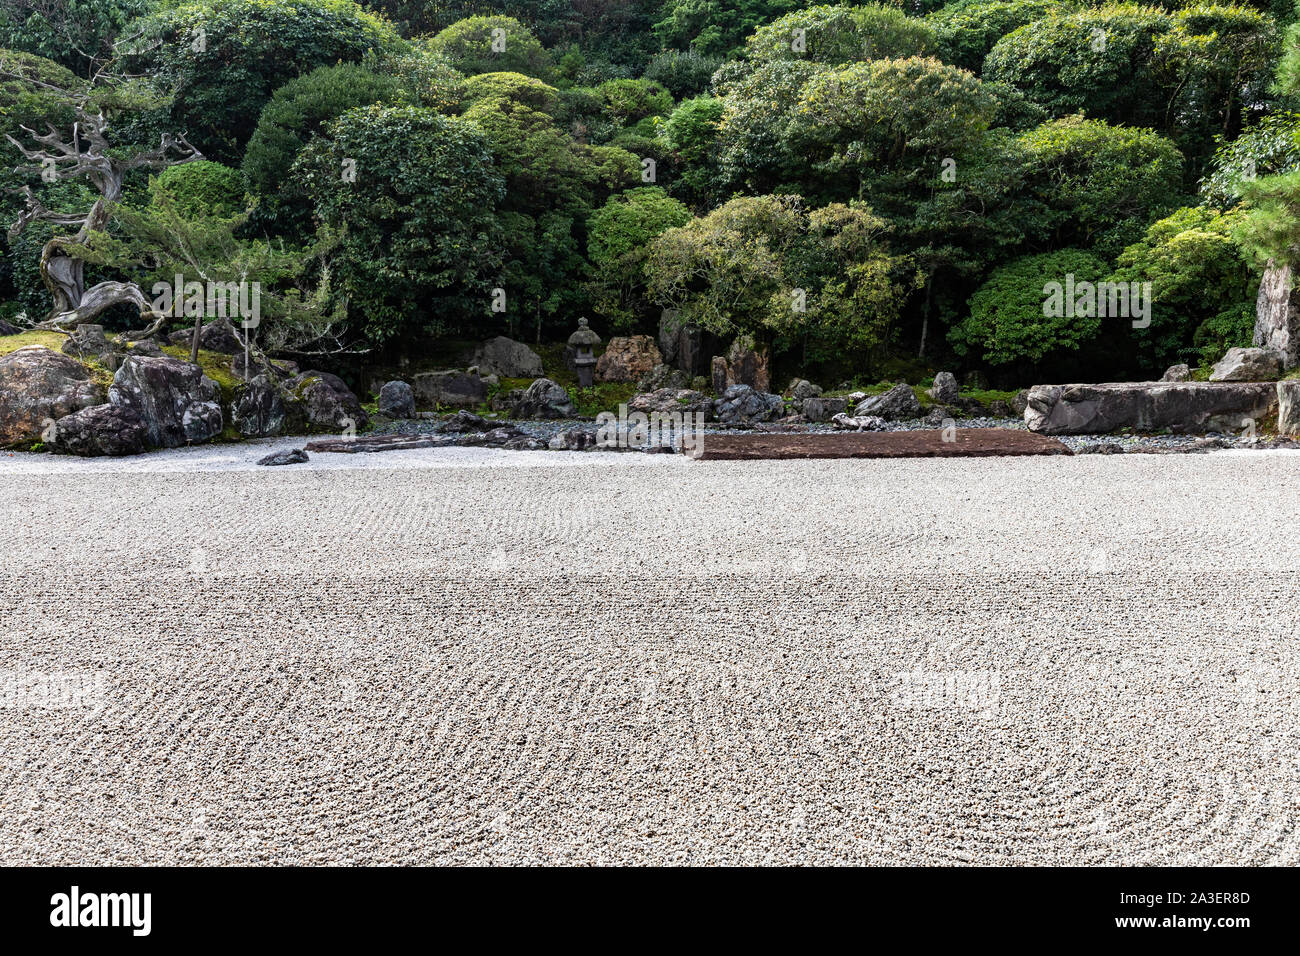 Kochiin Tempel ist am besten für seine schönen Kran und Schildkröte Garten bekannt. Die außergewöhnlich komplexen Zen Garden ist ein perfekt ruhigen entkommen. Die wichtigsten Gard Stockfoto